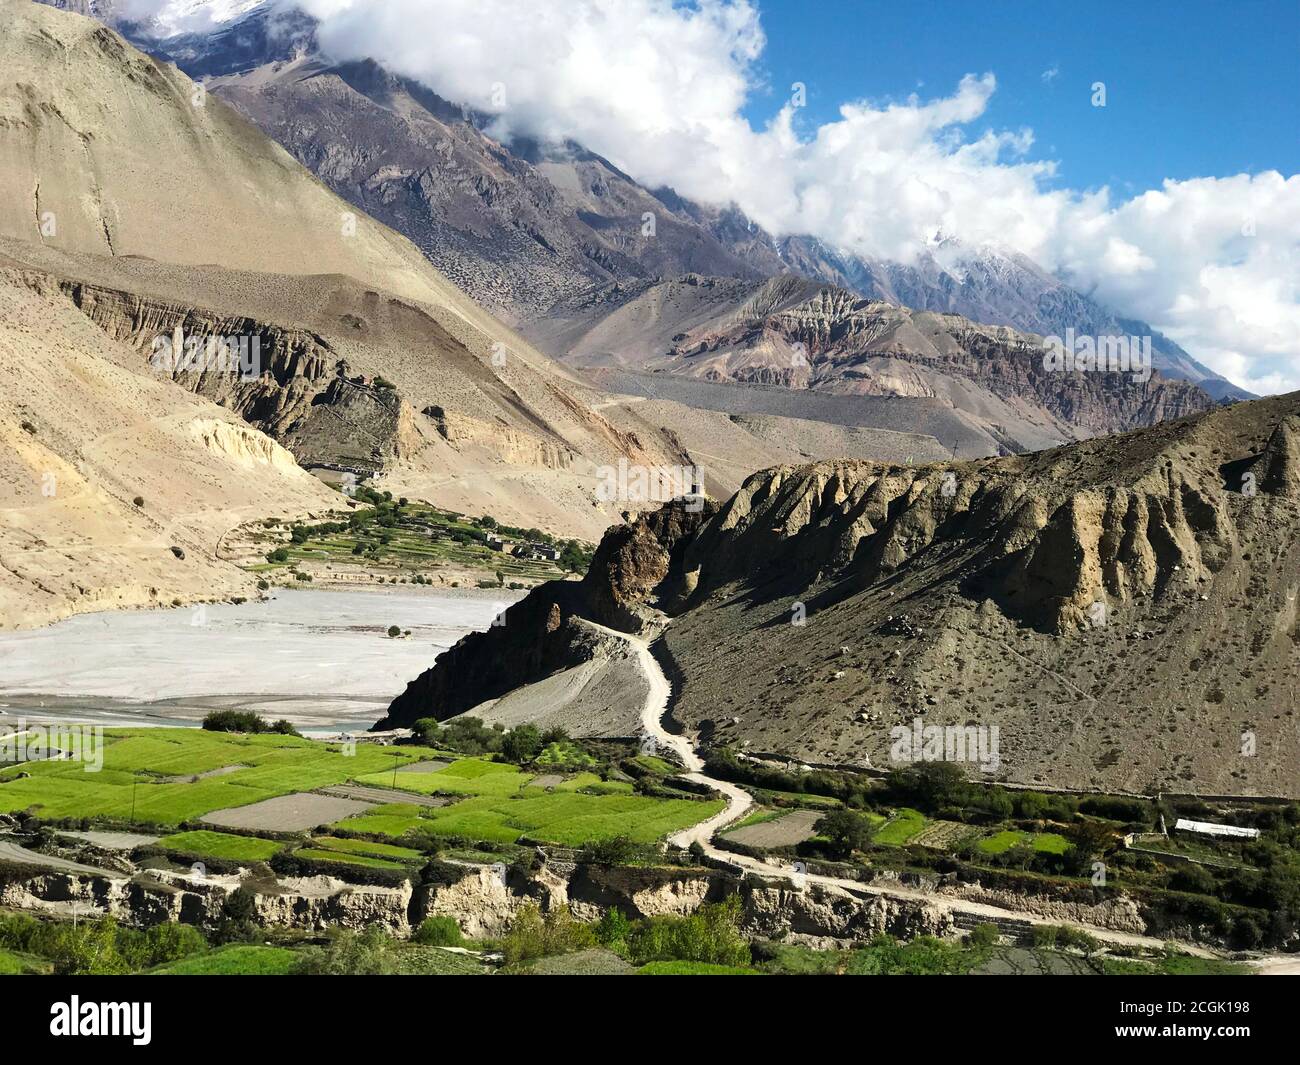 Malerische Aussicht auf Kali Gandaki Tal, Mustang, Nepal Himalaya. Wunderschöne Berglandschaft. Bergsommer. Ländliche Szene. Dorf Kagbeni.Grüne Felder. Stockfoto